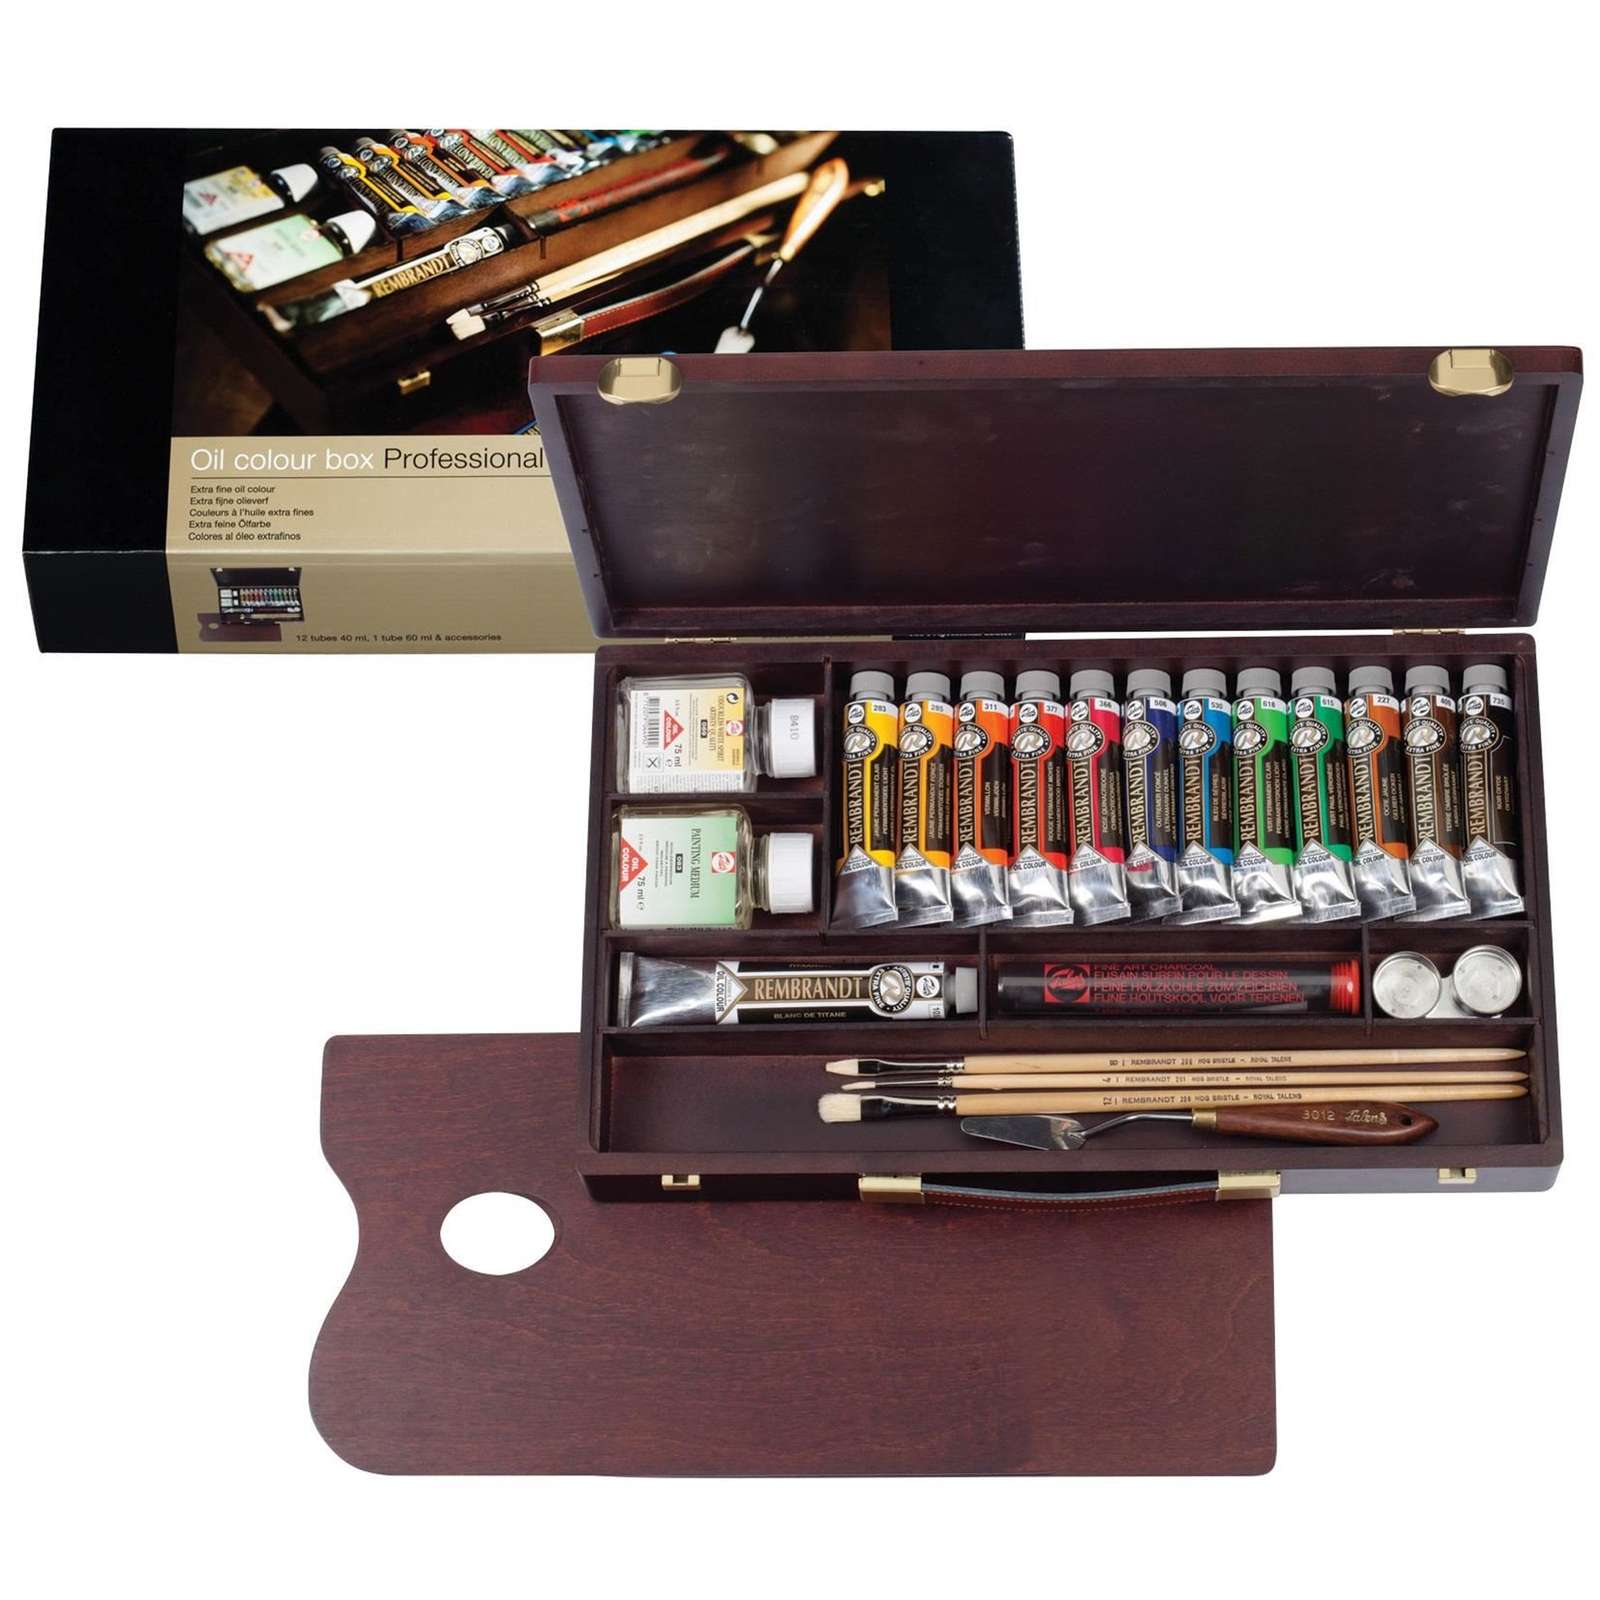 Rembrandt Oil colour Paint Professional Wood Box Set, 12x40ml Tubes + 1x60ml Tub